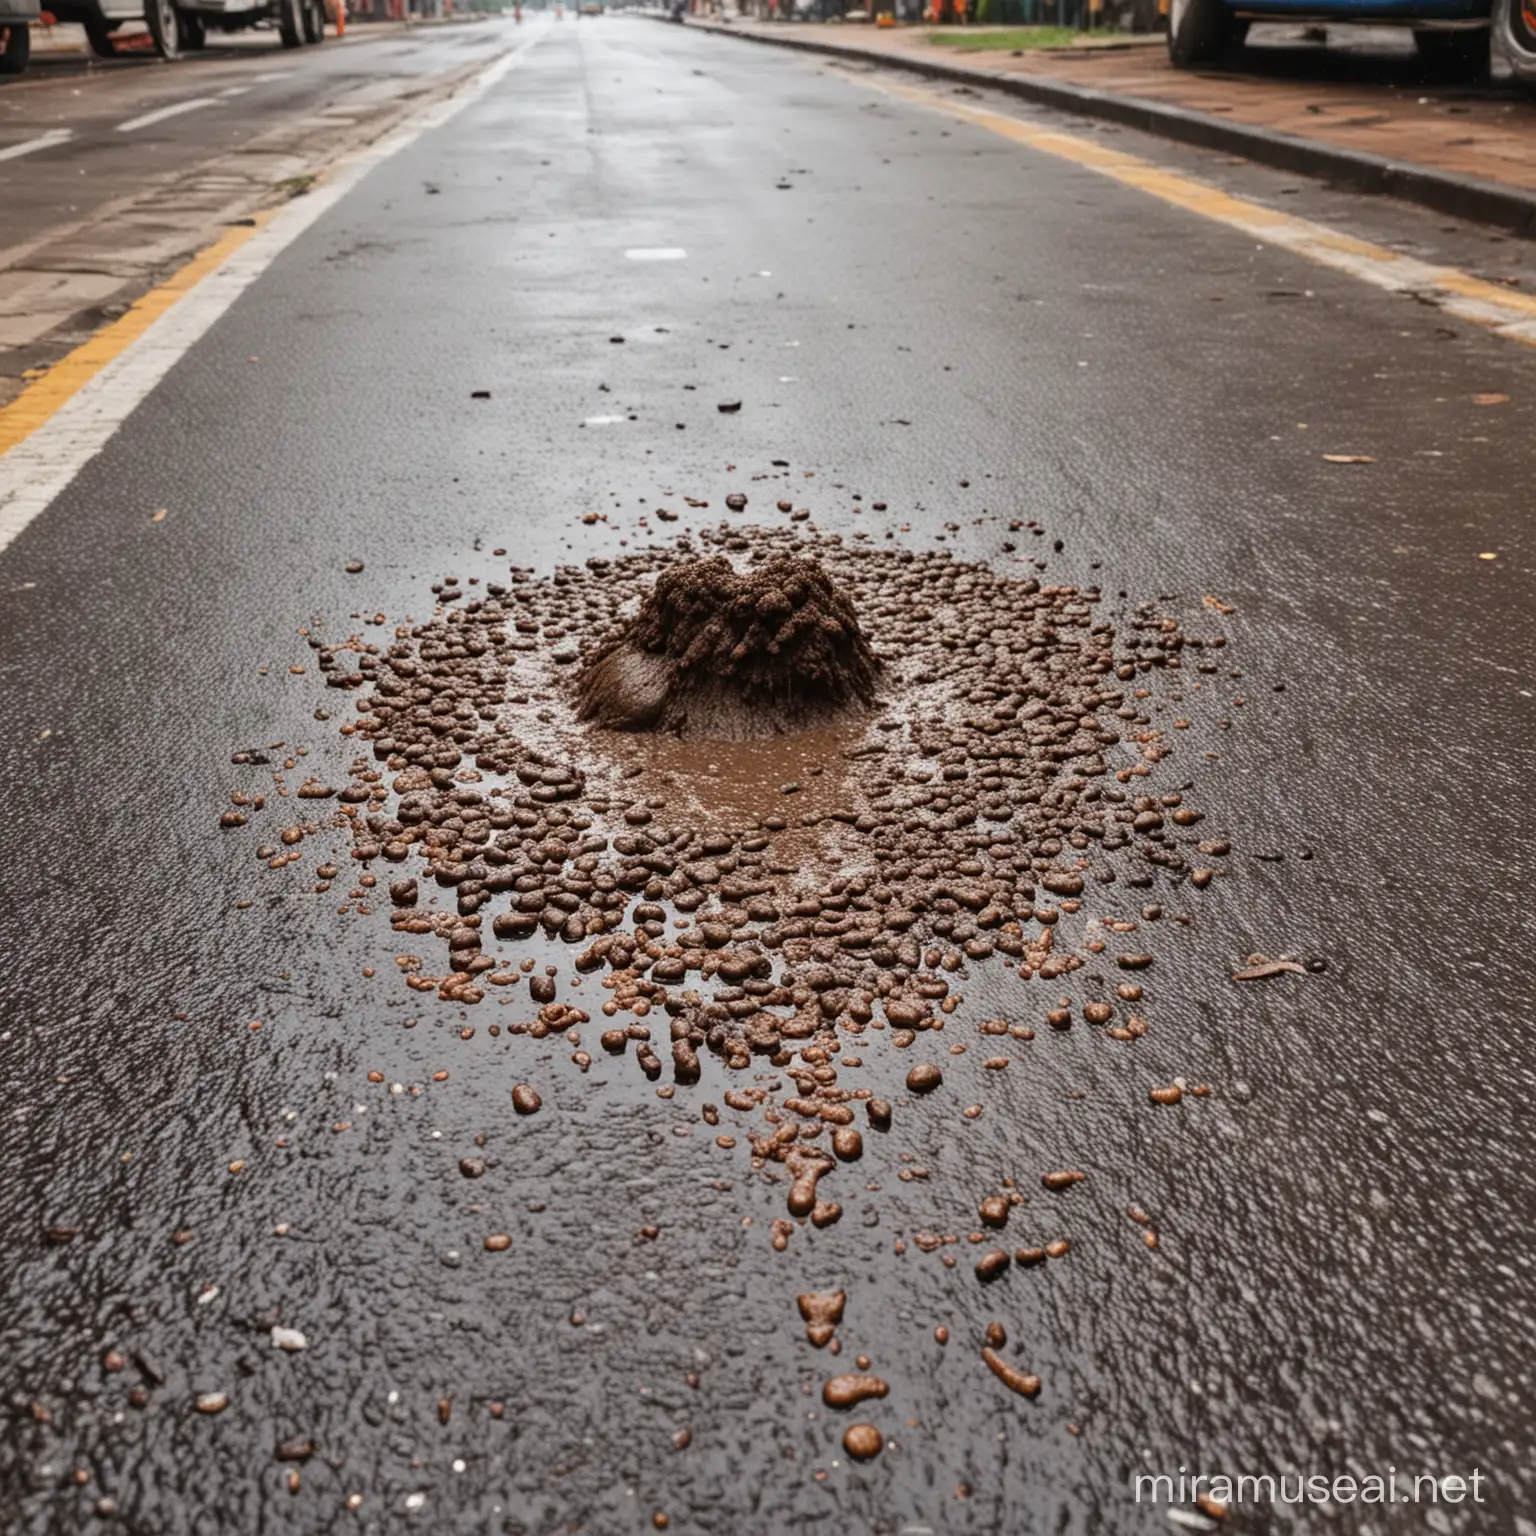 Monsoon Scene Wet Poop in Open Streets of India